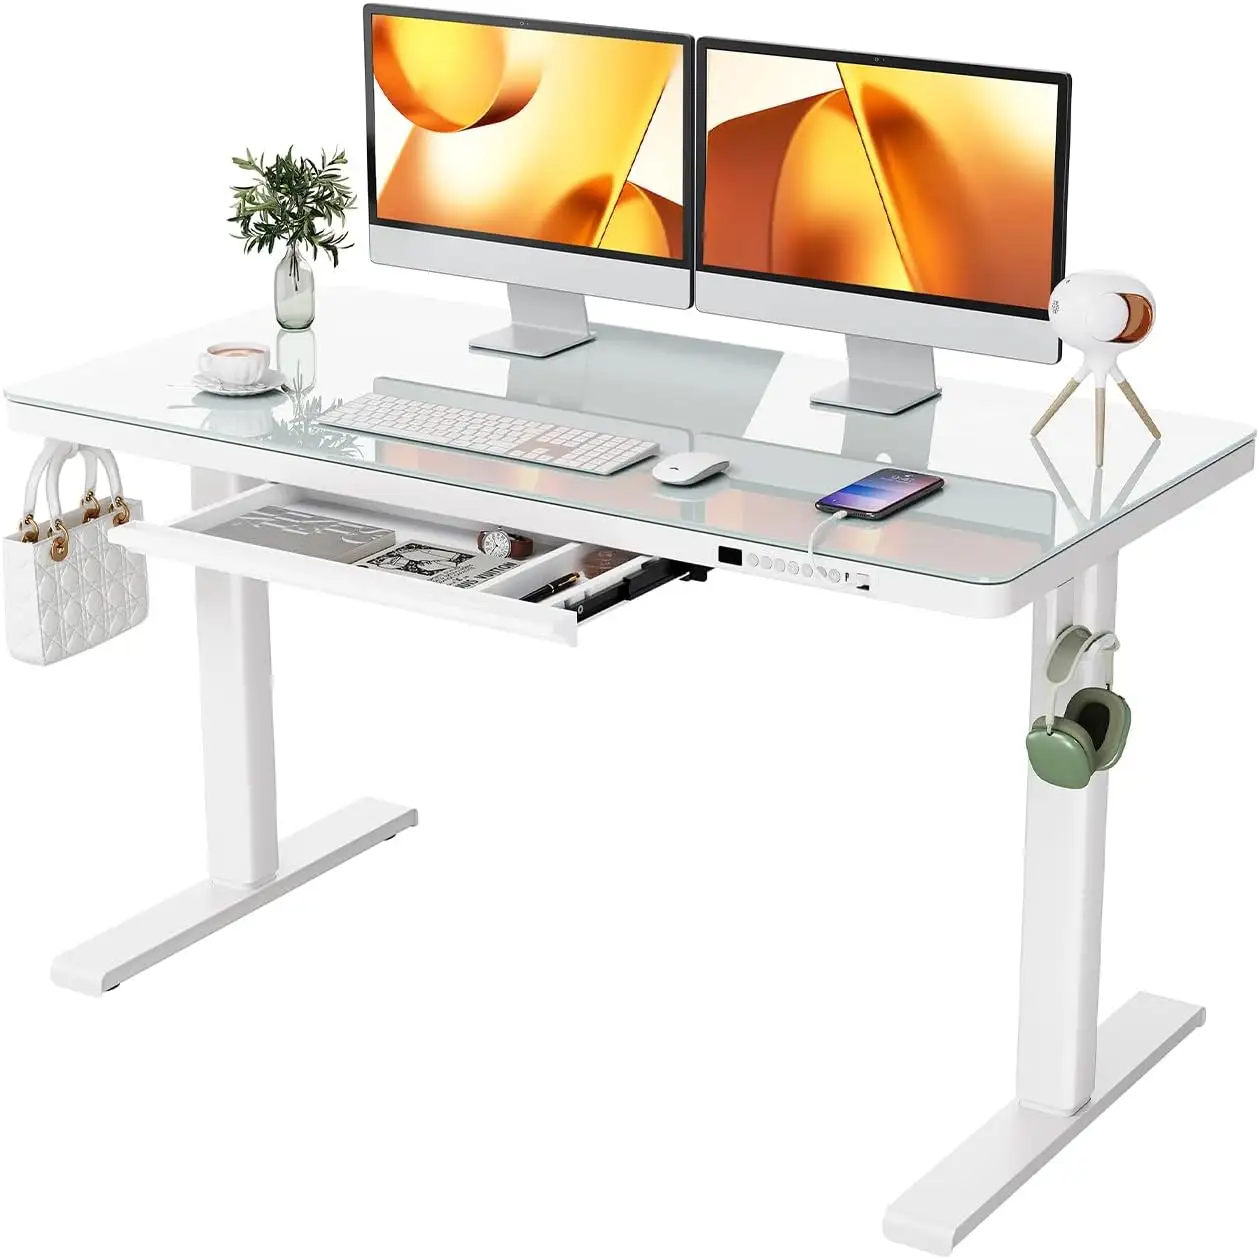 Mesa de escritório com suporte ergonômico para escritório, mesa de escritório com altura ajustável, mesa eletrônica com tampo de vidro, desenho ErGear